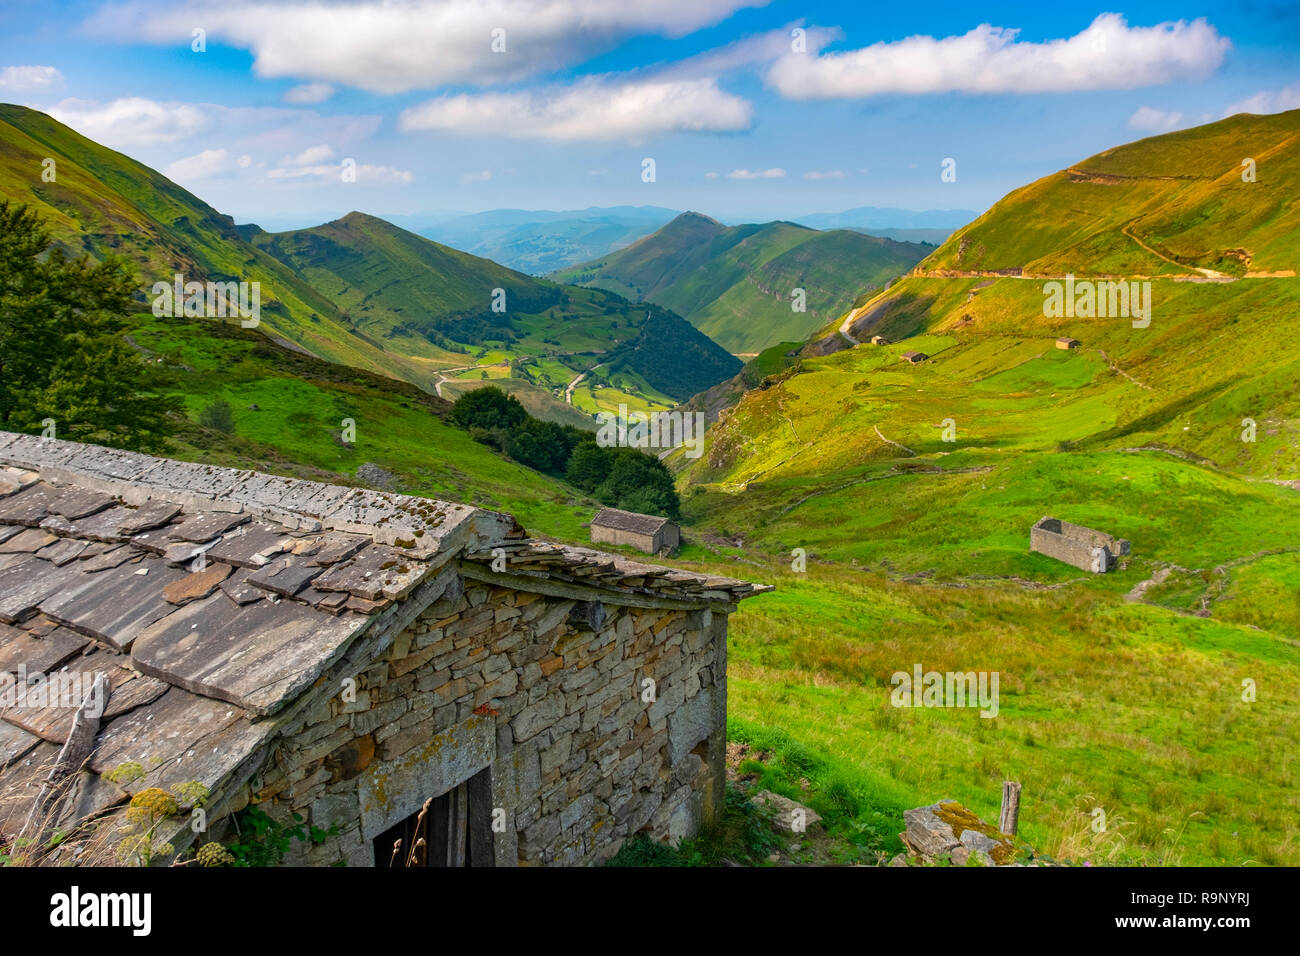 La natura del paesaggio. Cabañas pasiegas e prati. Cottage di Valles pasiegos. Cantabria Spagna settentrionale, l'Europa. Foto Stock